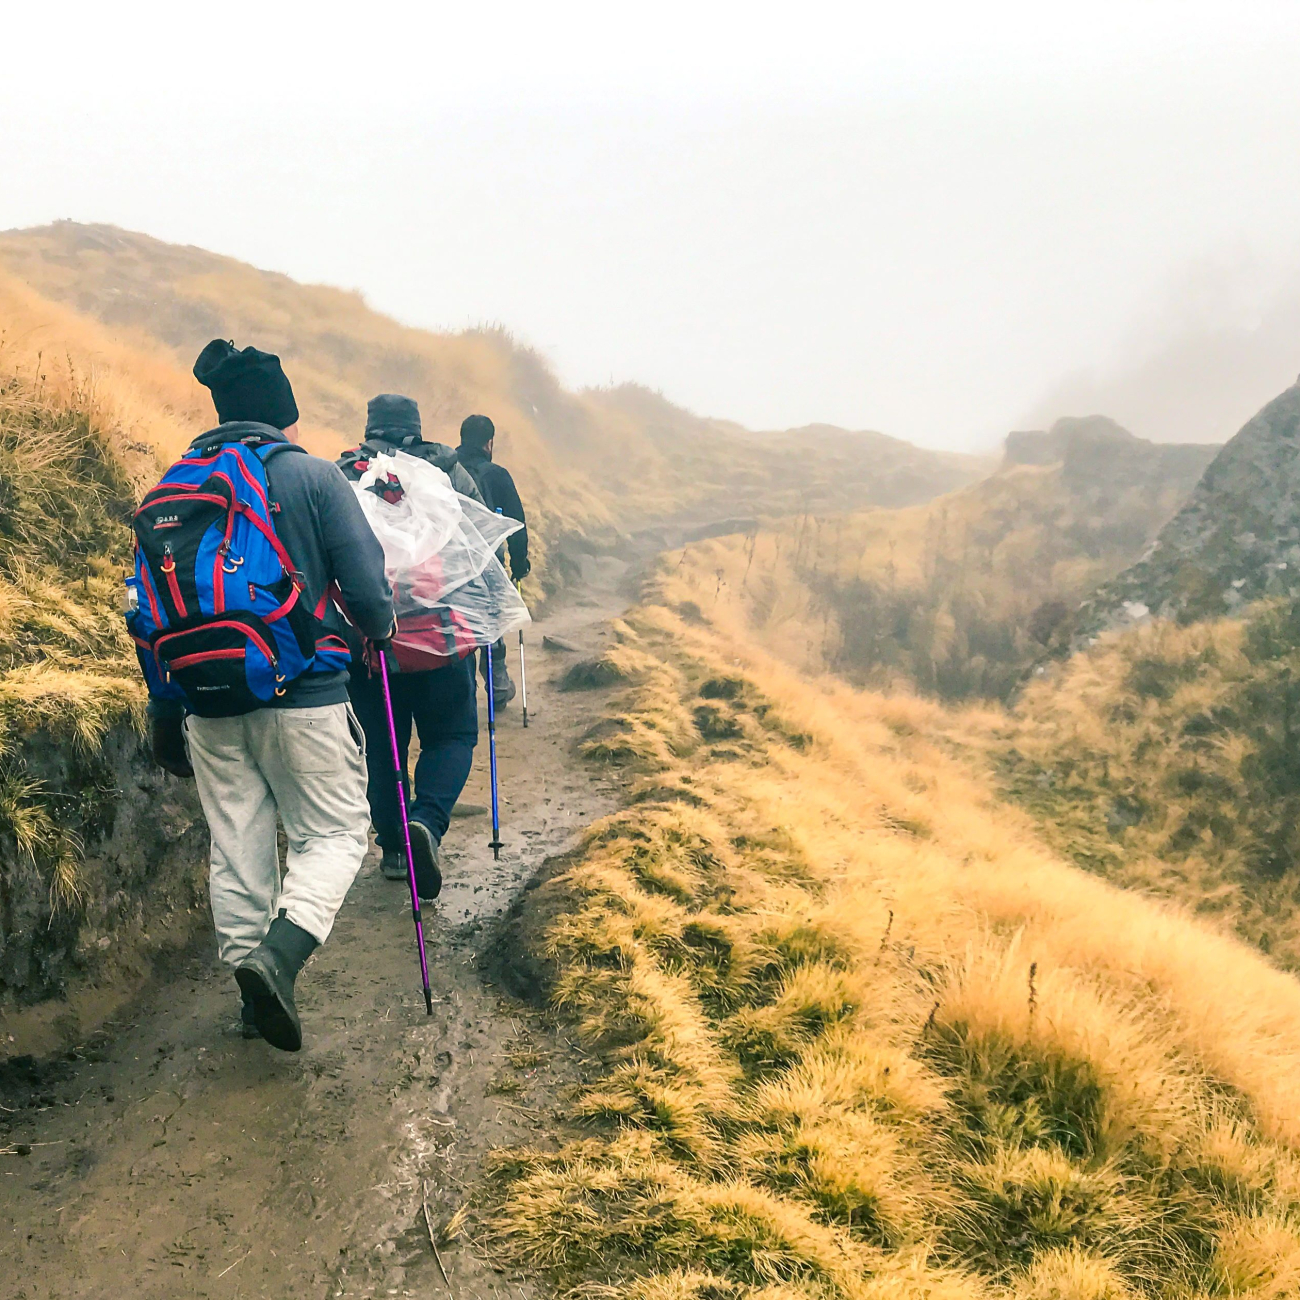 Students trekking on a mountain